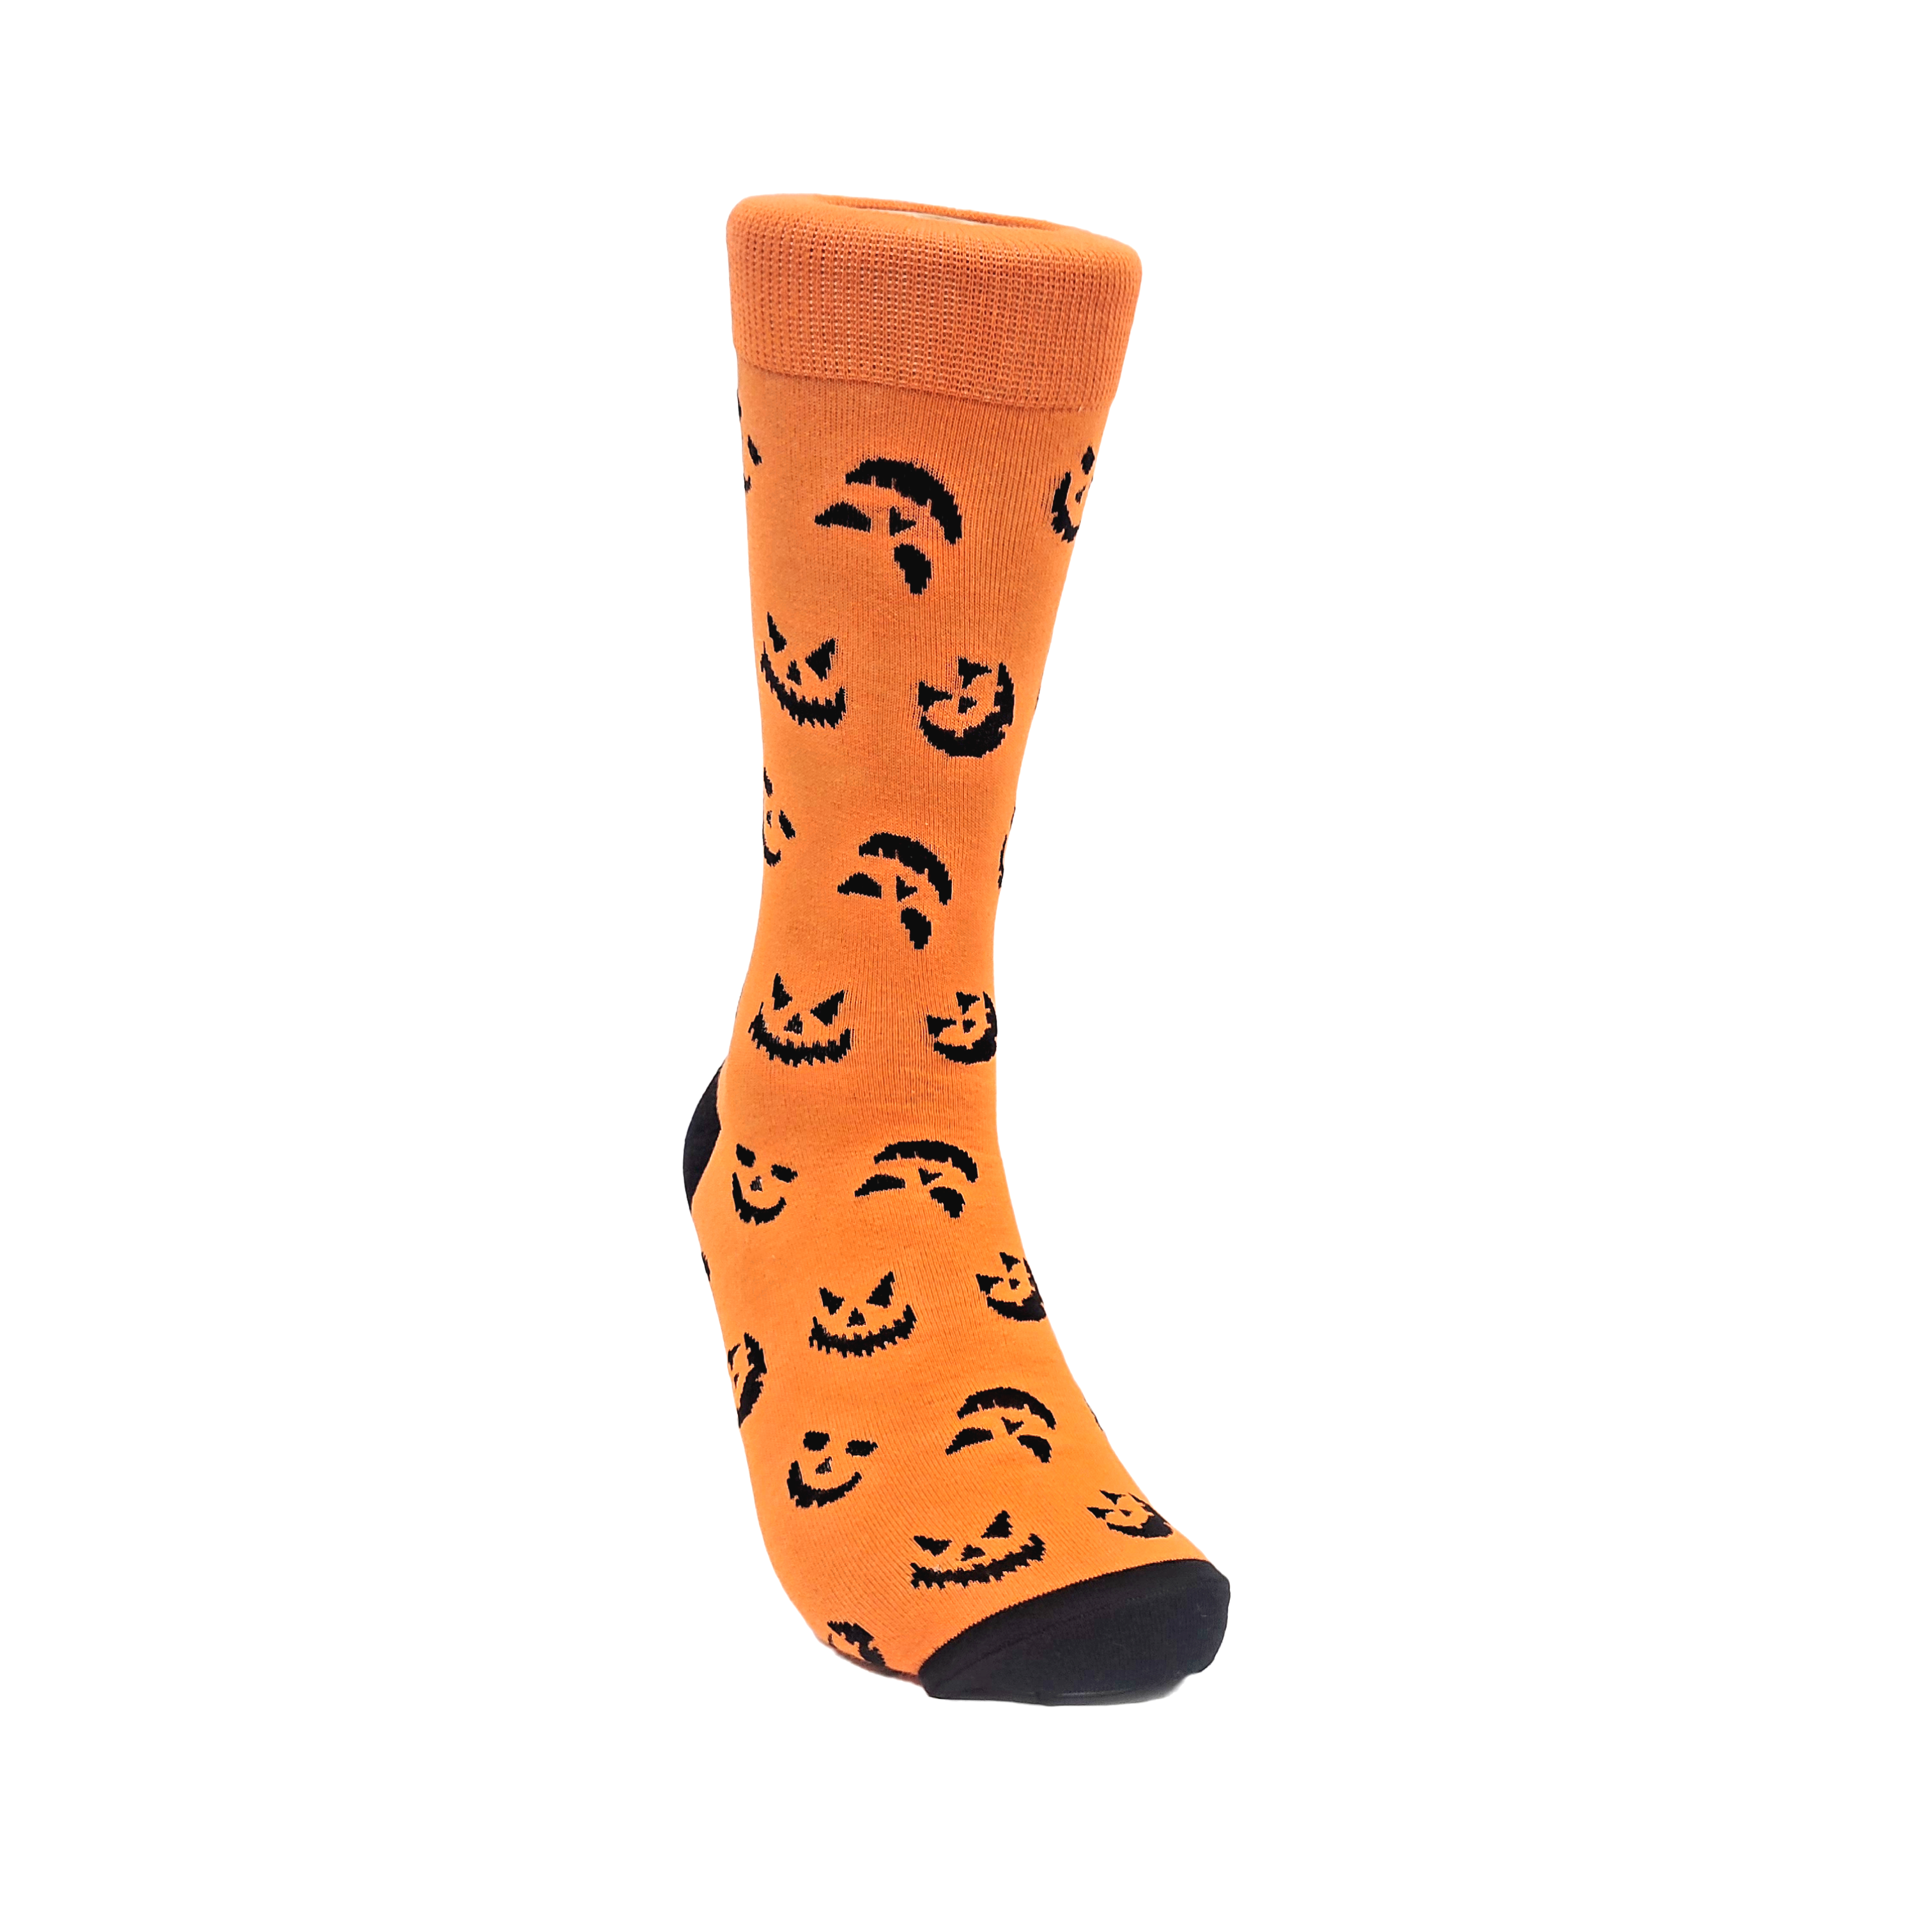 Pumpkin Face Patterned Socks (Adult Large)